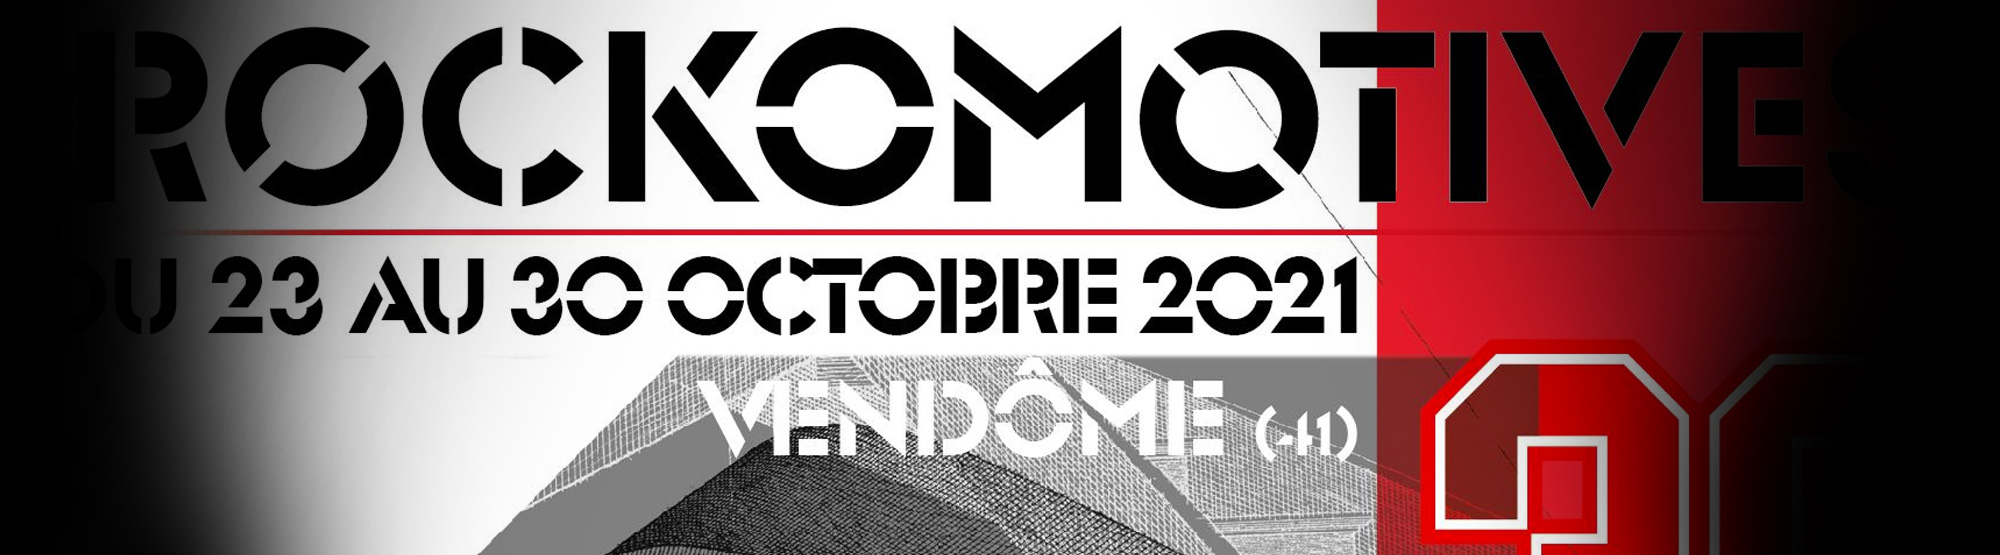 festival rockomotives du 23 au 30 octobre 2021, Vendôme www.rockomotives.com